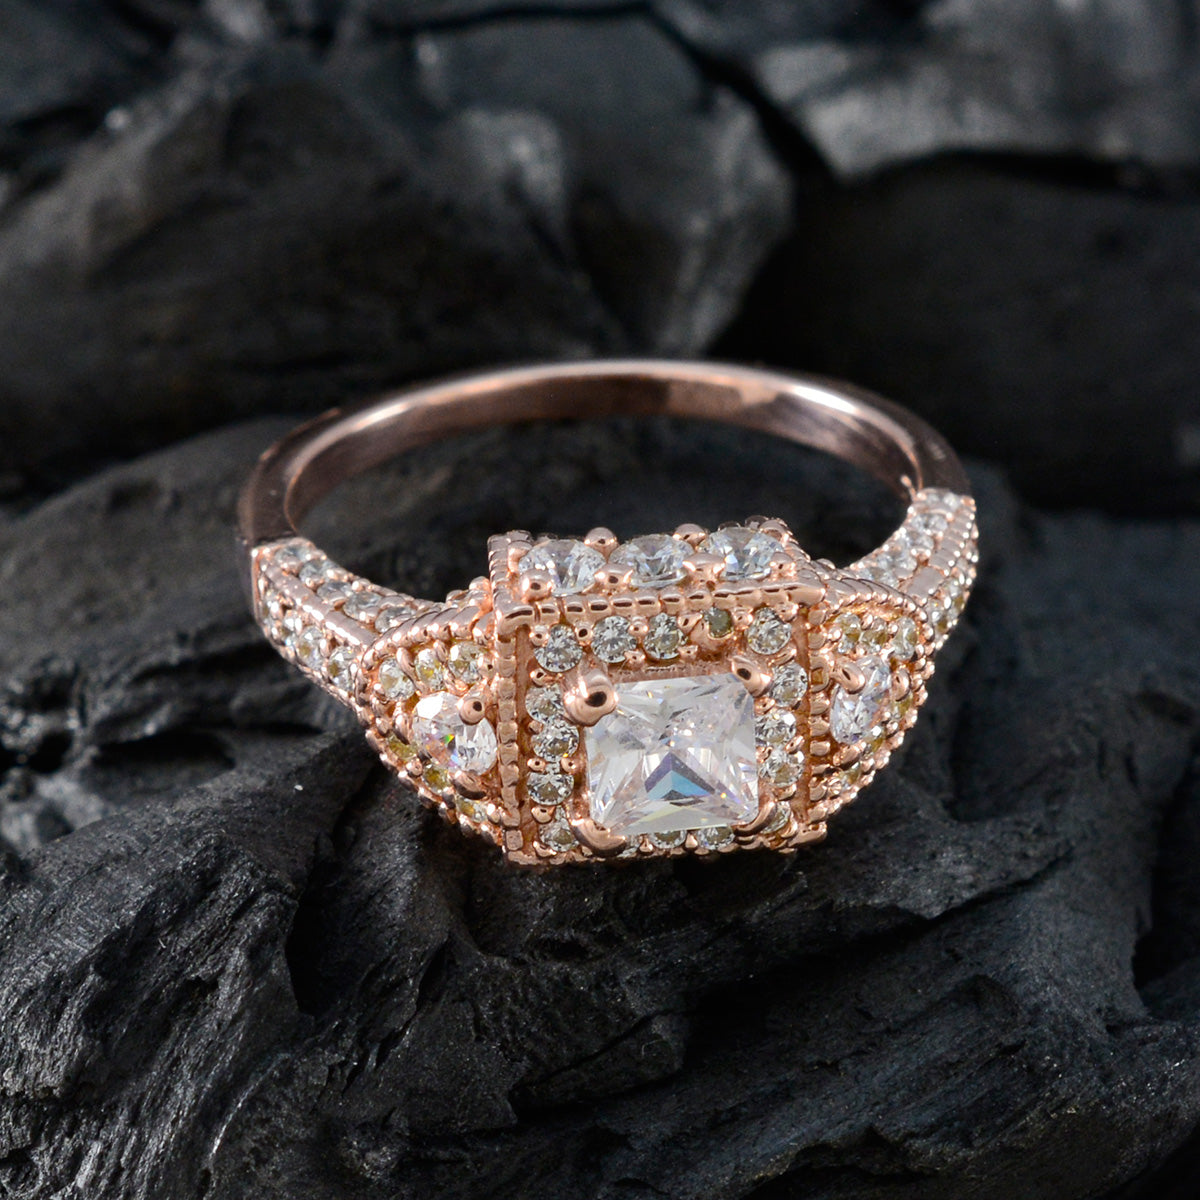 Riyo aantrekkelijke zilveren ring met roségouden plating witte CZ-steen vierkante vorm Prong Setting stijlvolle sieraden Valentijnsdagring